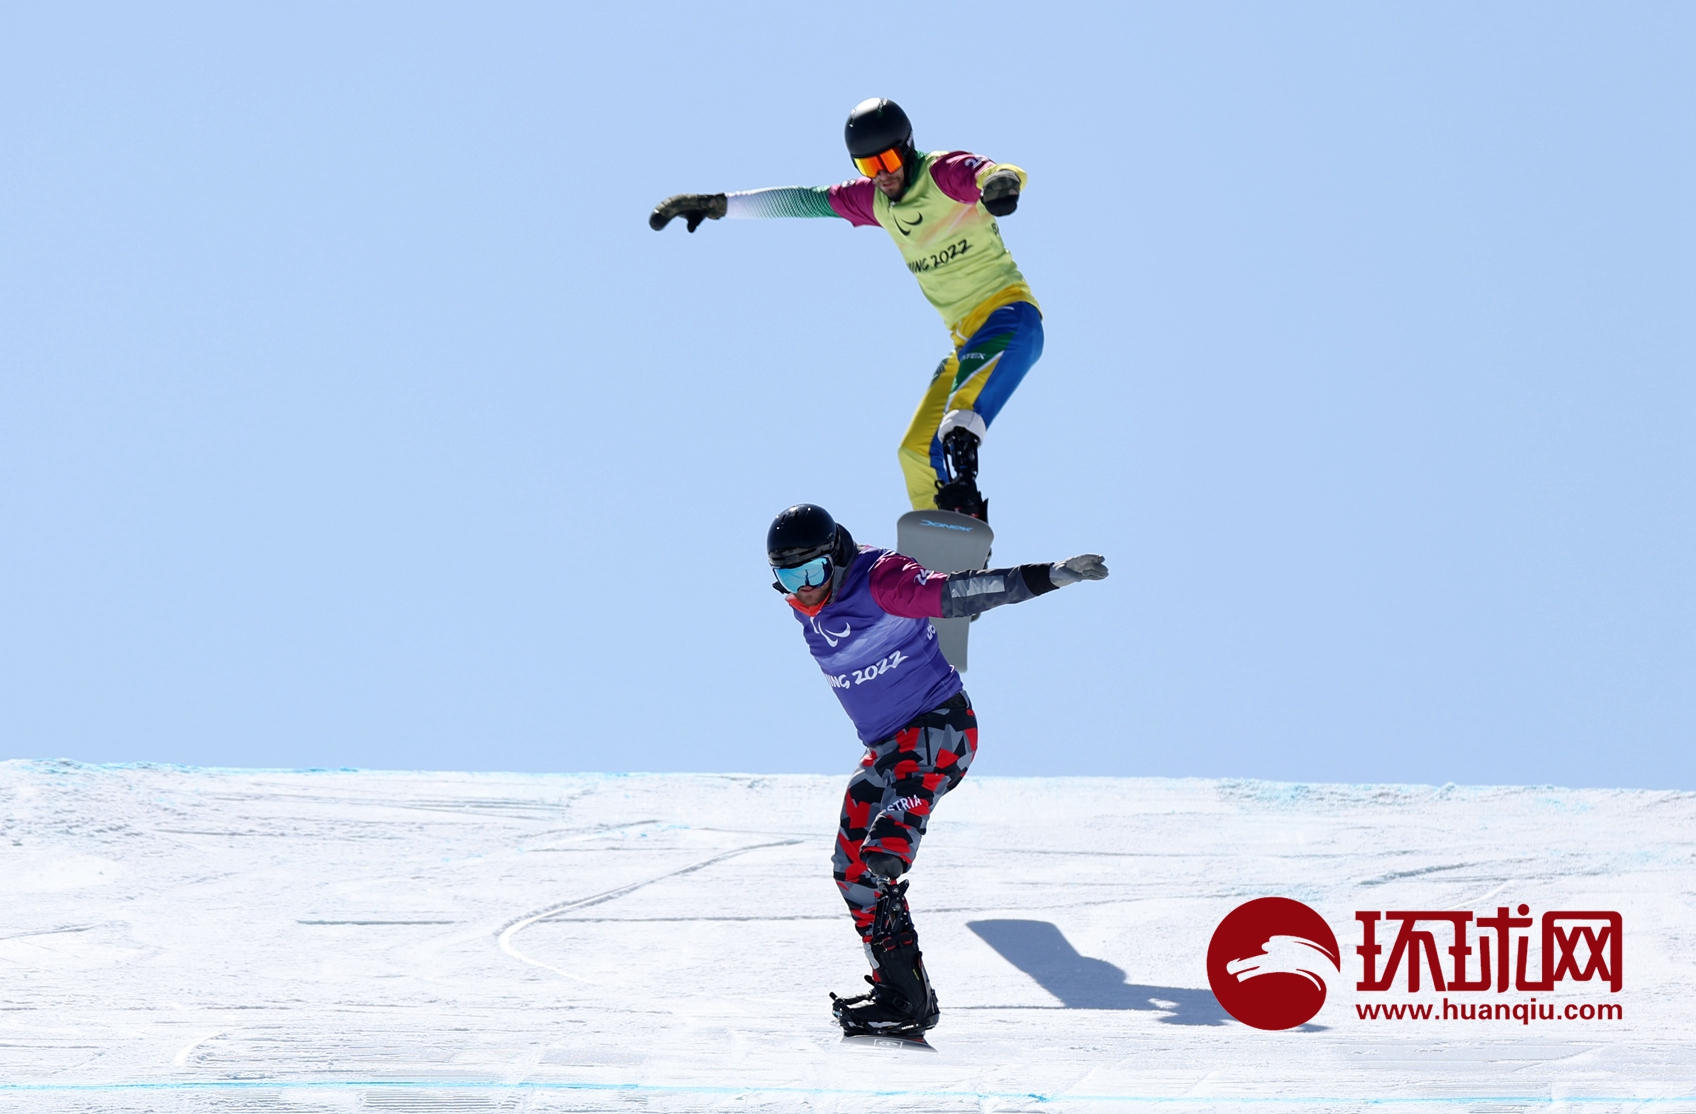 北京冬残奥会残奥单板滑雪比赛项目举行共产生8枚金牌